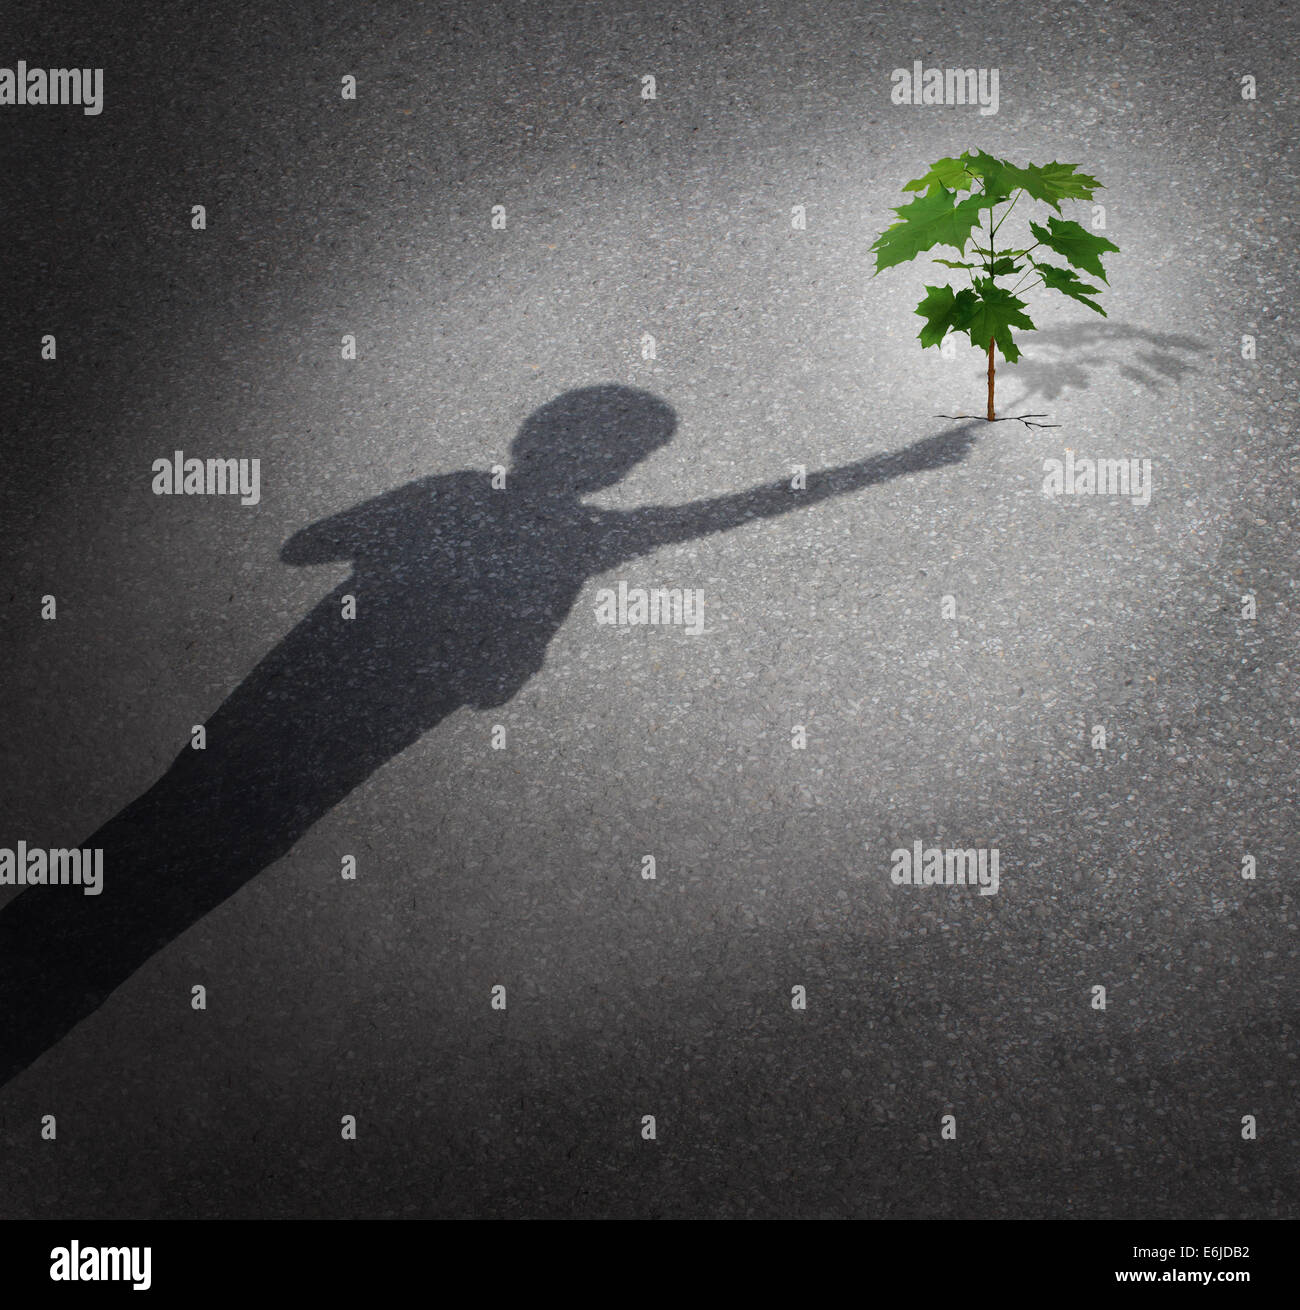 La vie et l'espoir qu'un concept se développer avec l'ombre d'un enfant de toucher un arbre pousse s'accroître par le trottoir de la ville en tant que symbole de l'avenir de la protection de l'environnement et le soutien de la prochaine génération. Banque D'Images